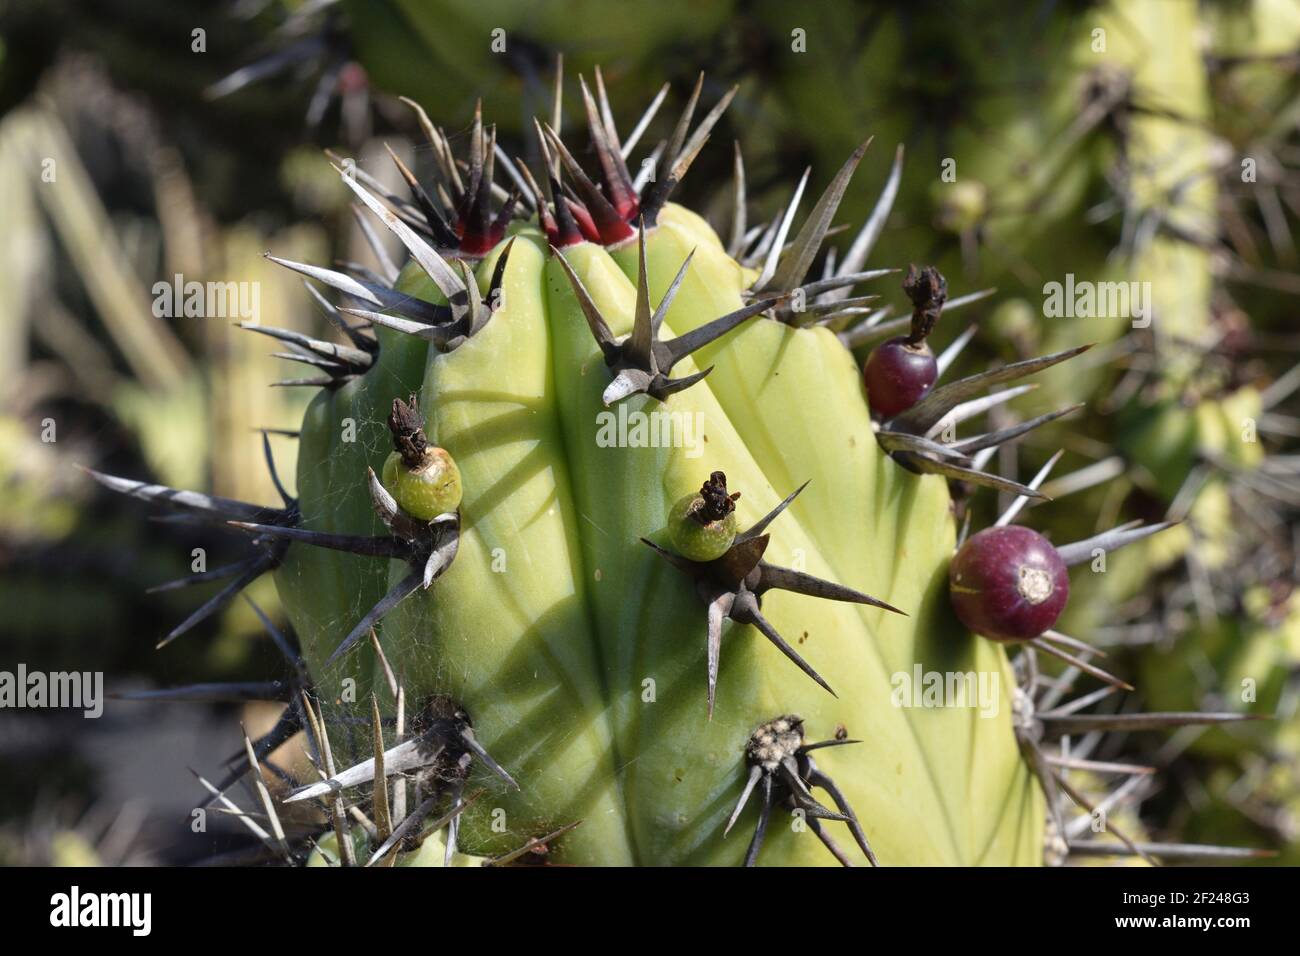 Originaire de la péninsule de Basse-Californie au Mexique.UNE plante tentaculaire, semblable à un arbre. Candelabra cactus peut atteindre des hauteurs d'environ 3 mètres Banque D'Images